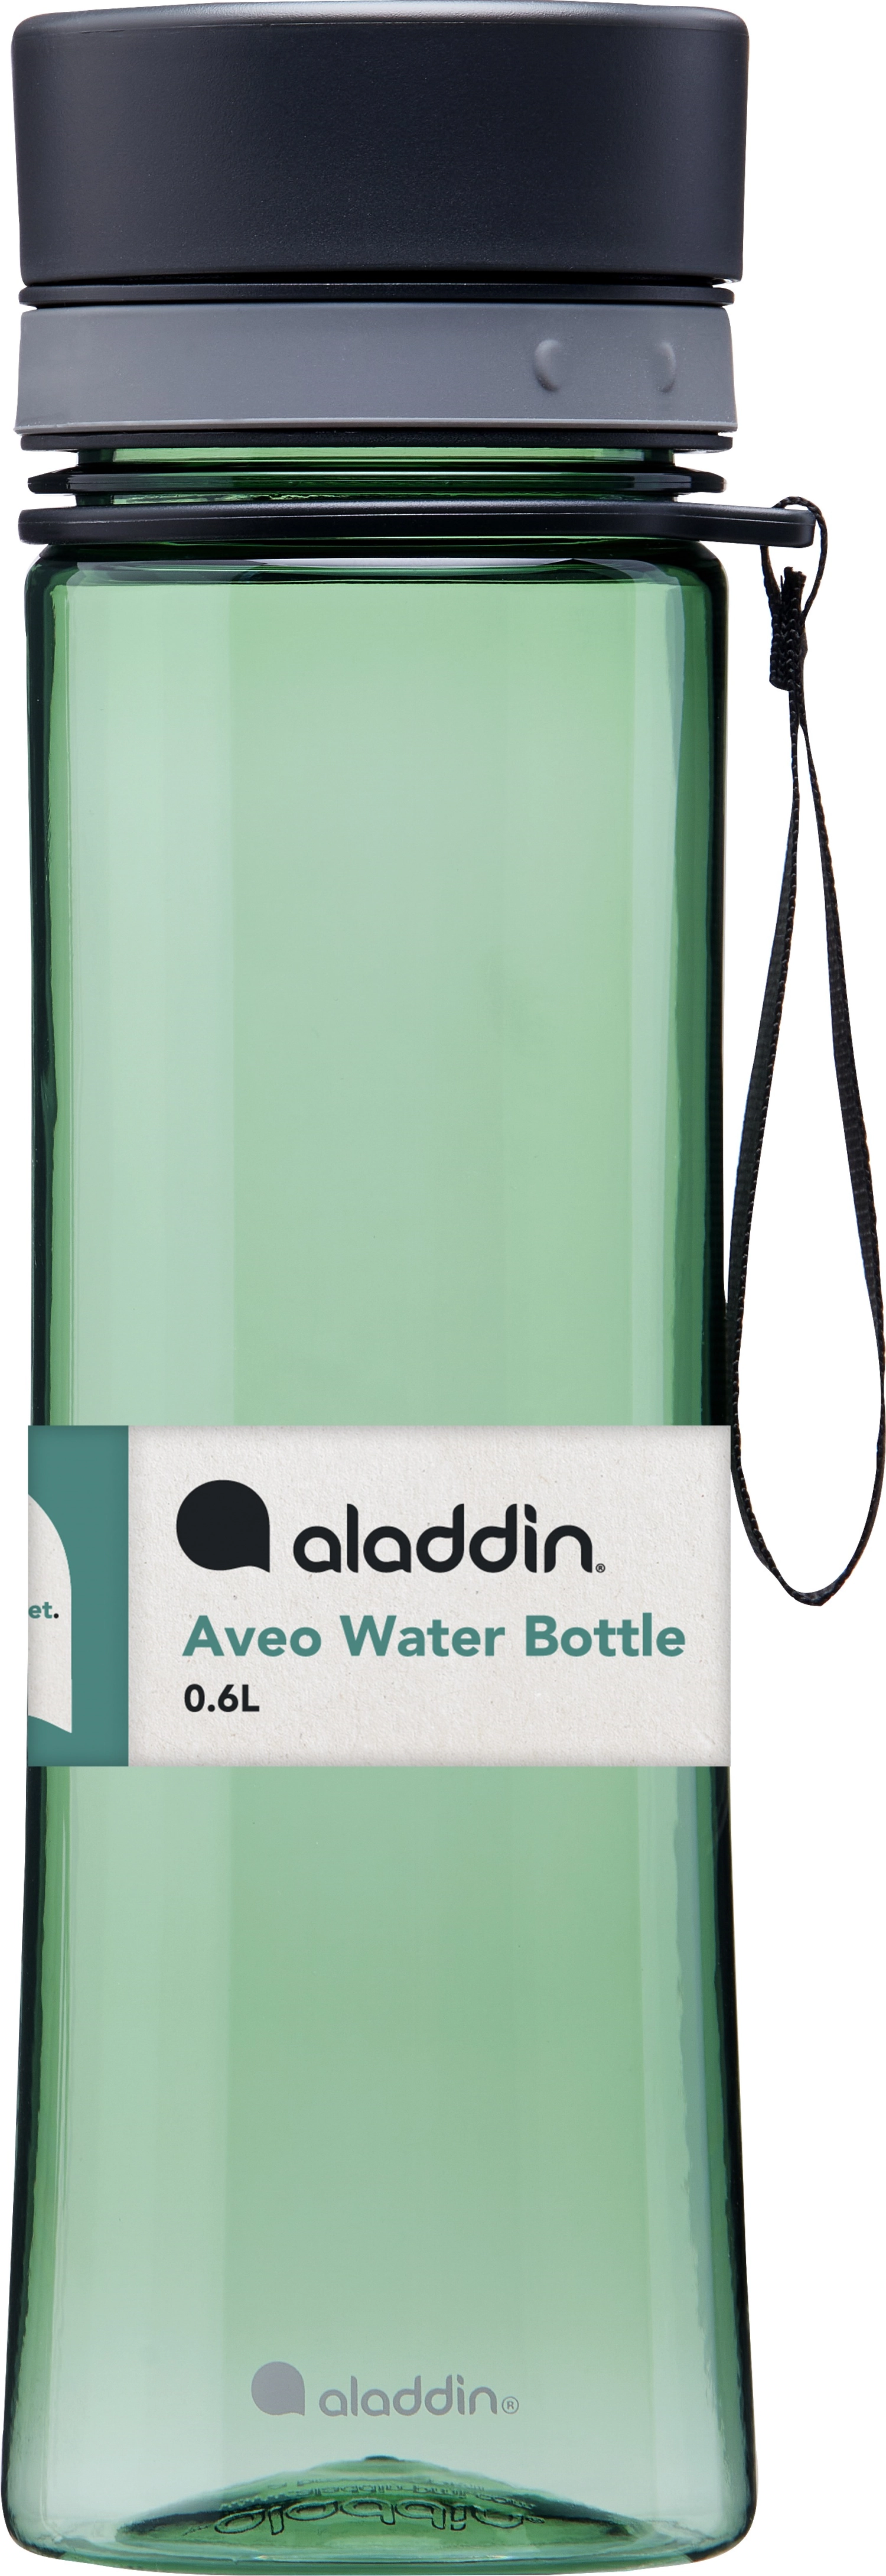 Aladdin aveo water bottle 0.6l basil green